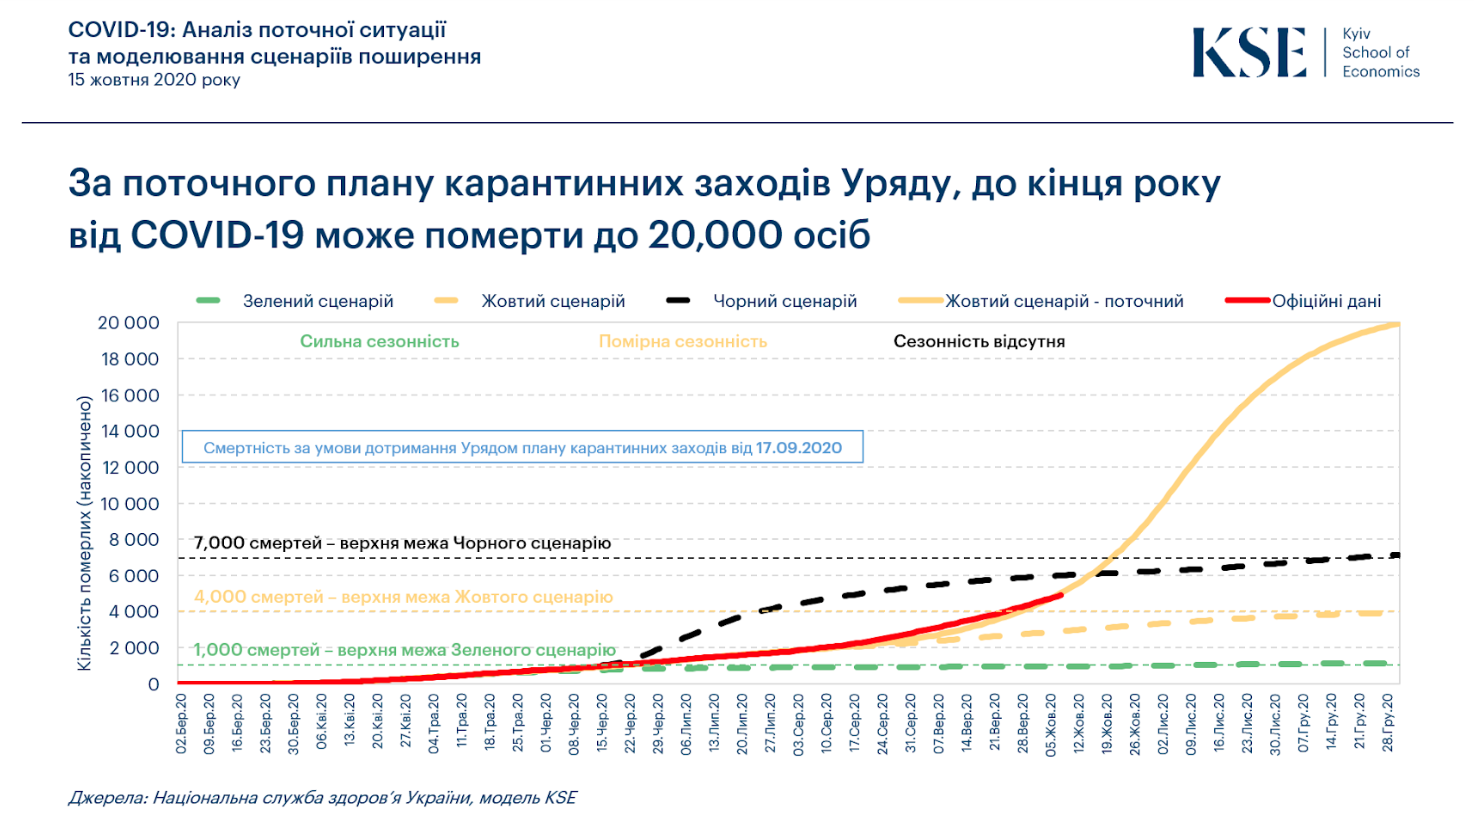 До конца года жертвами COVID-19 могут стать 20 тысяч украинцев